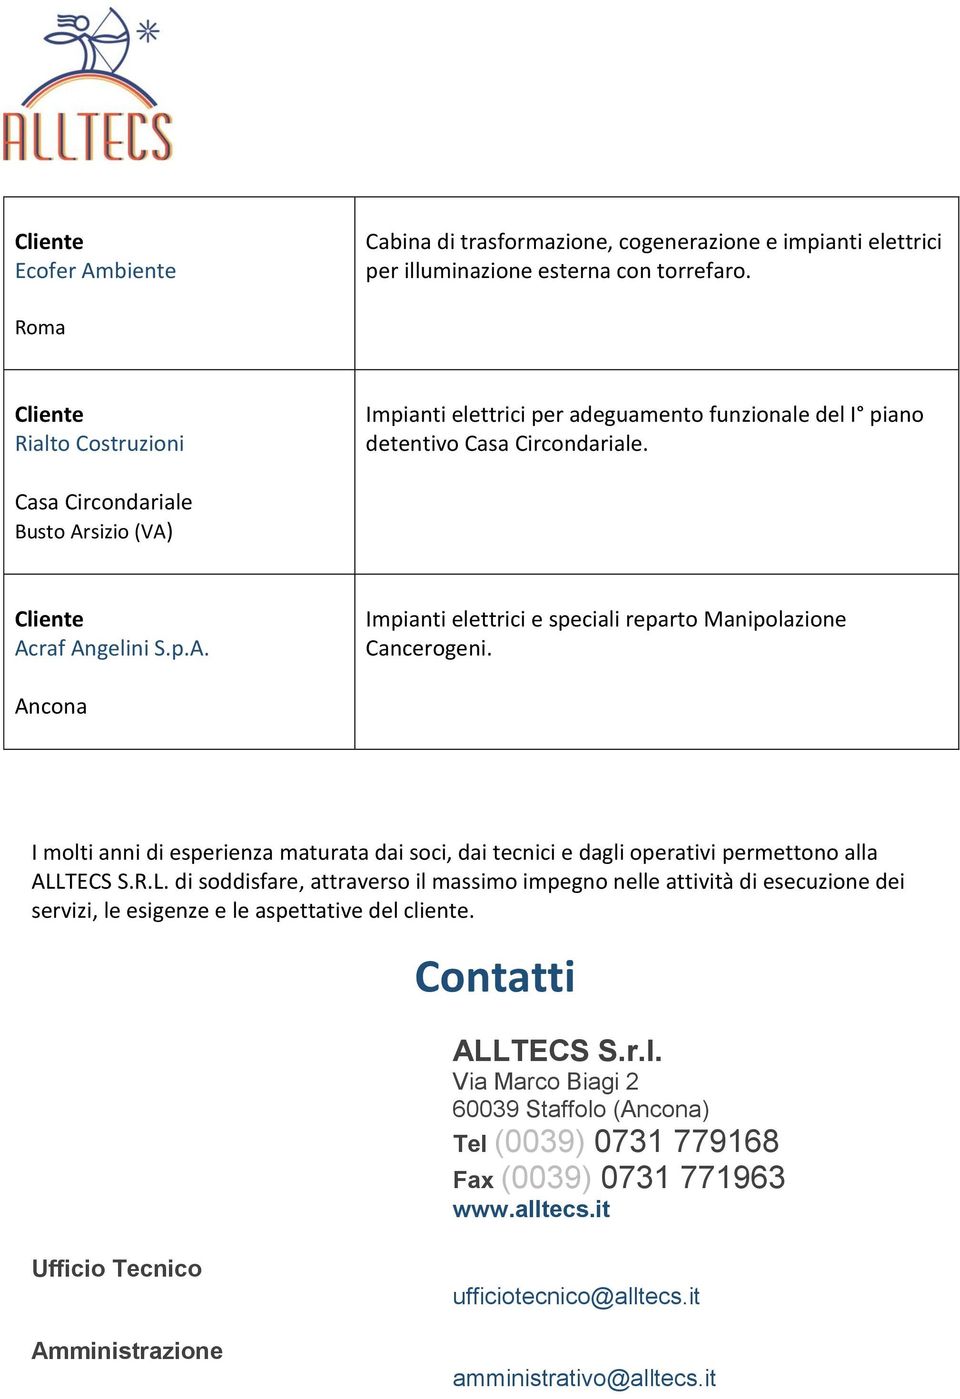 sizio (VA) Acraf Angelini S.p.A. Impianti elettrici e speciali reparto Manipolazione Cancerogeni.